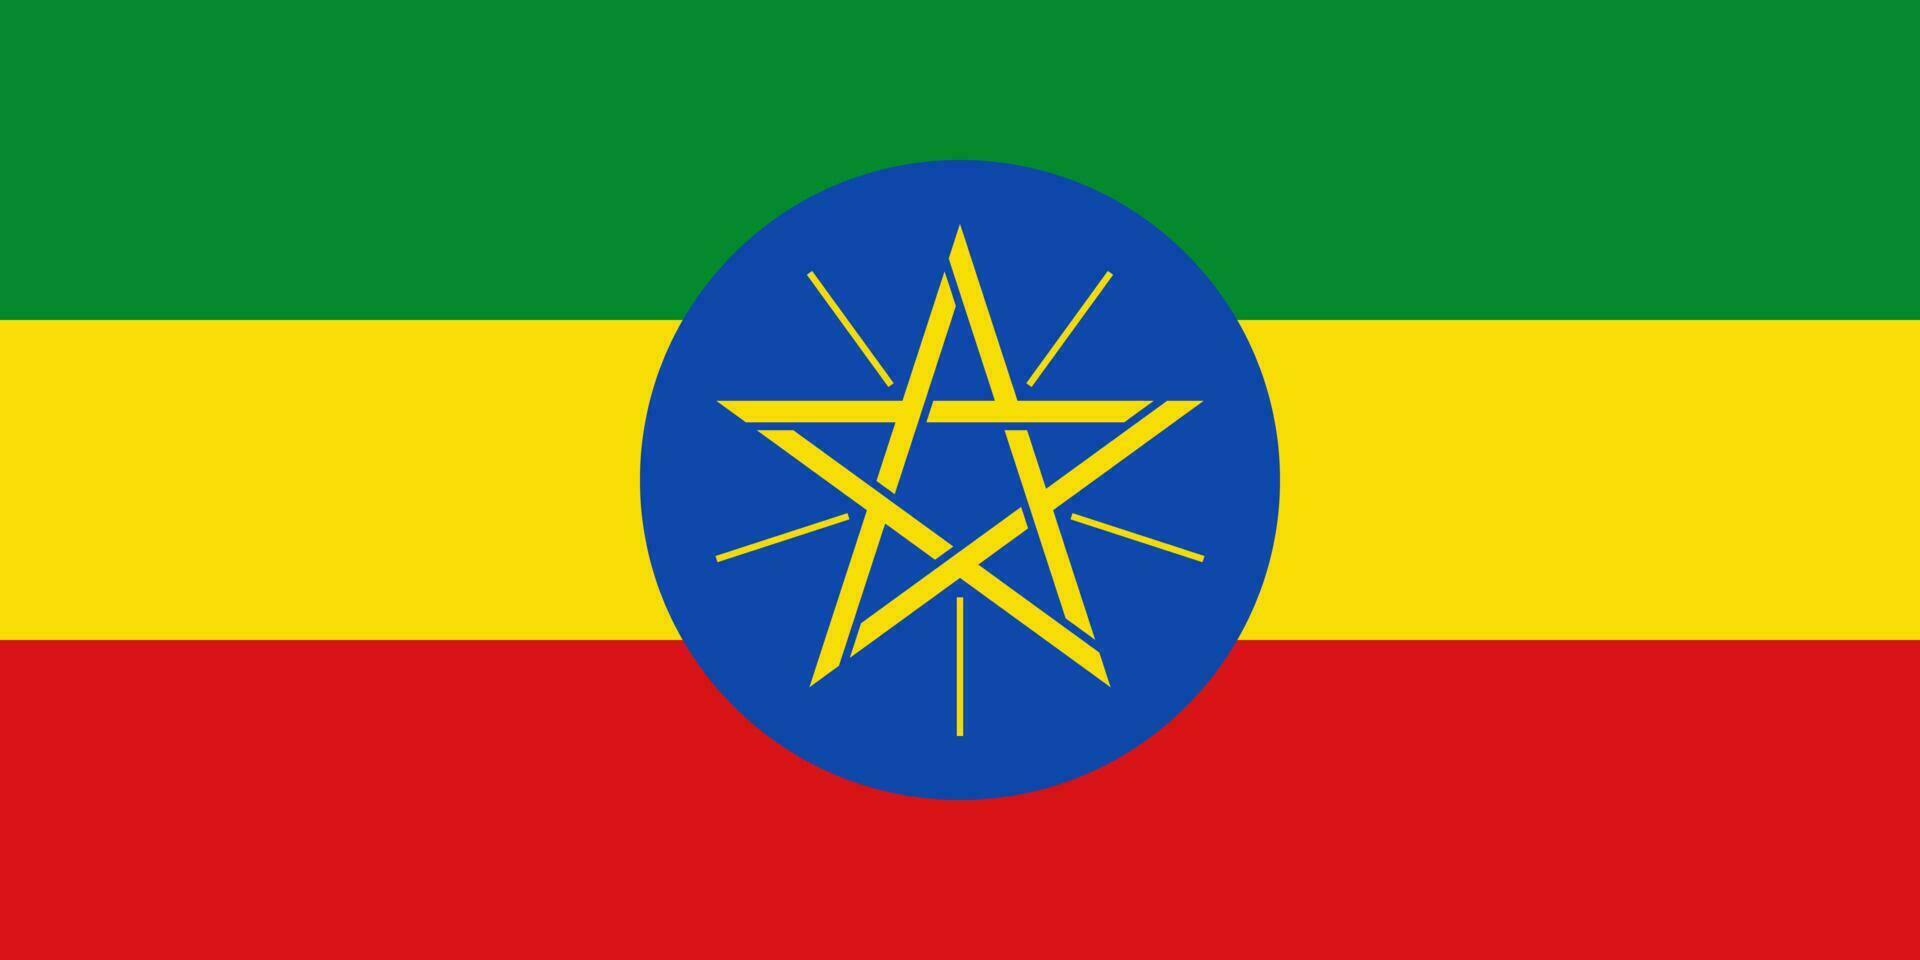 bandiera dell'Etiopia, colori ufficiali e proporzione. illustrazione vettoriale. vettore